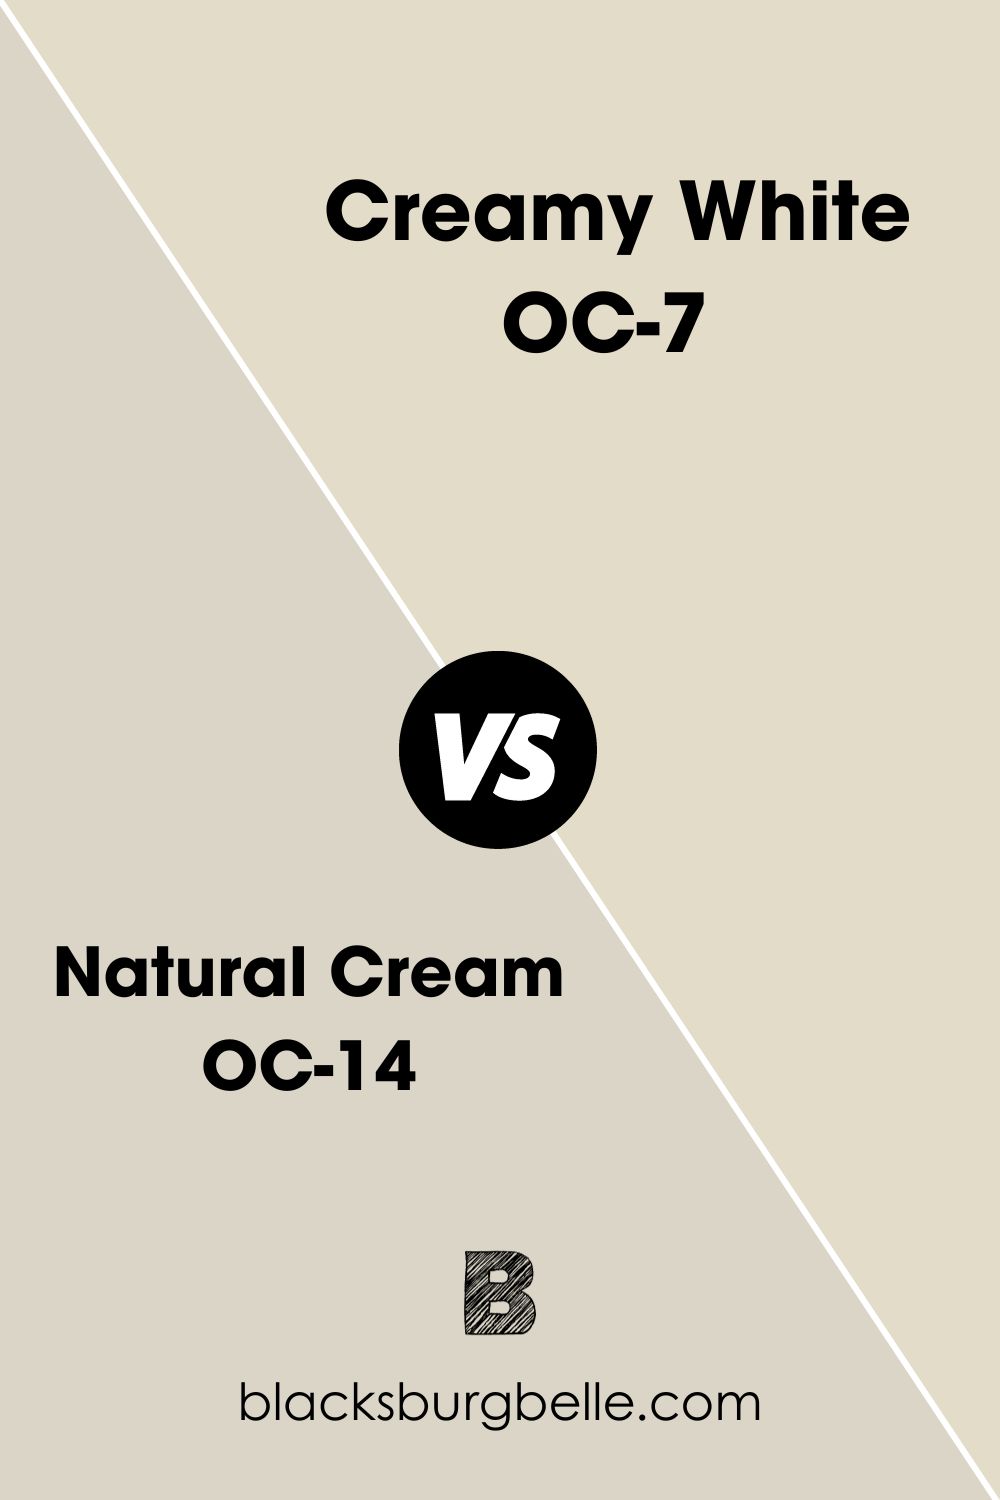 Natural Cream OC-14 